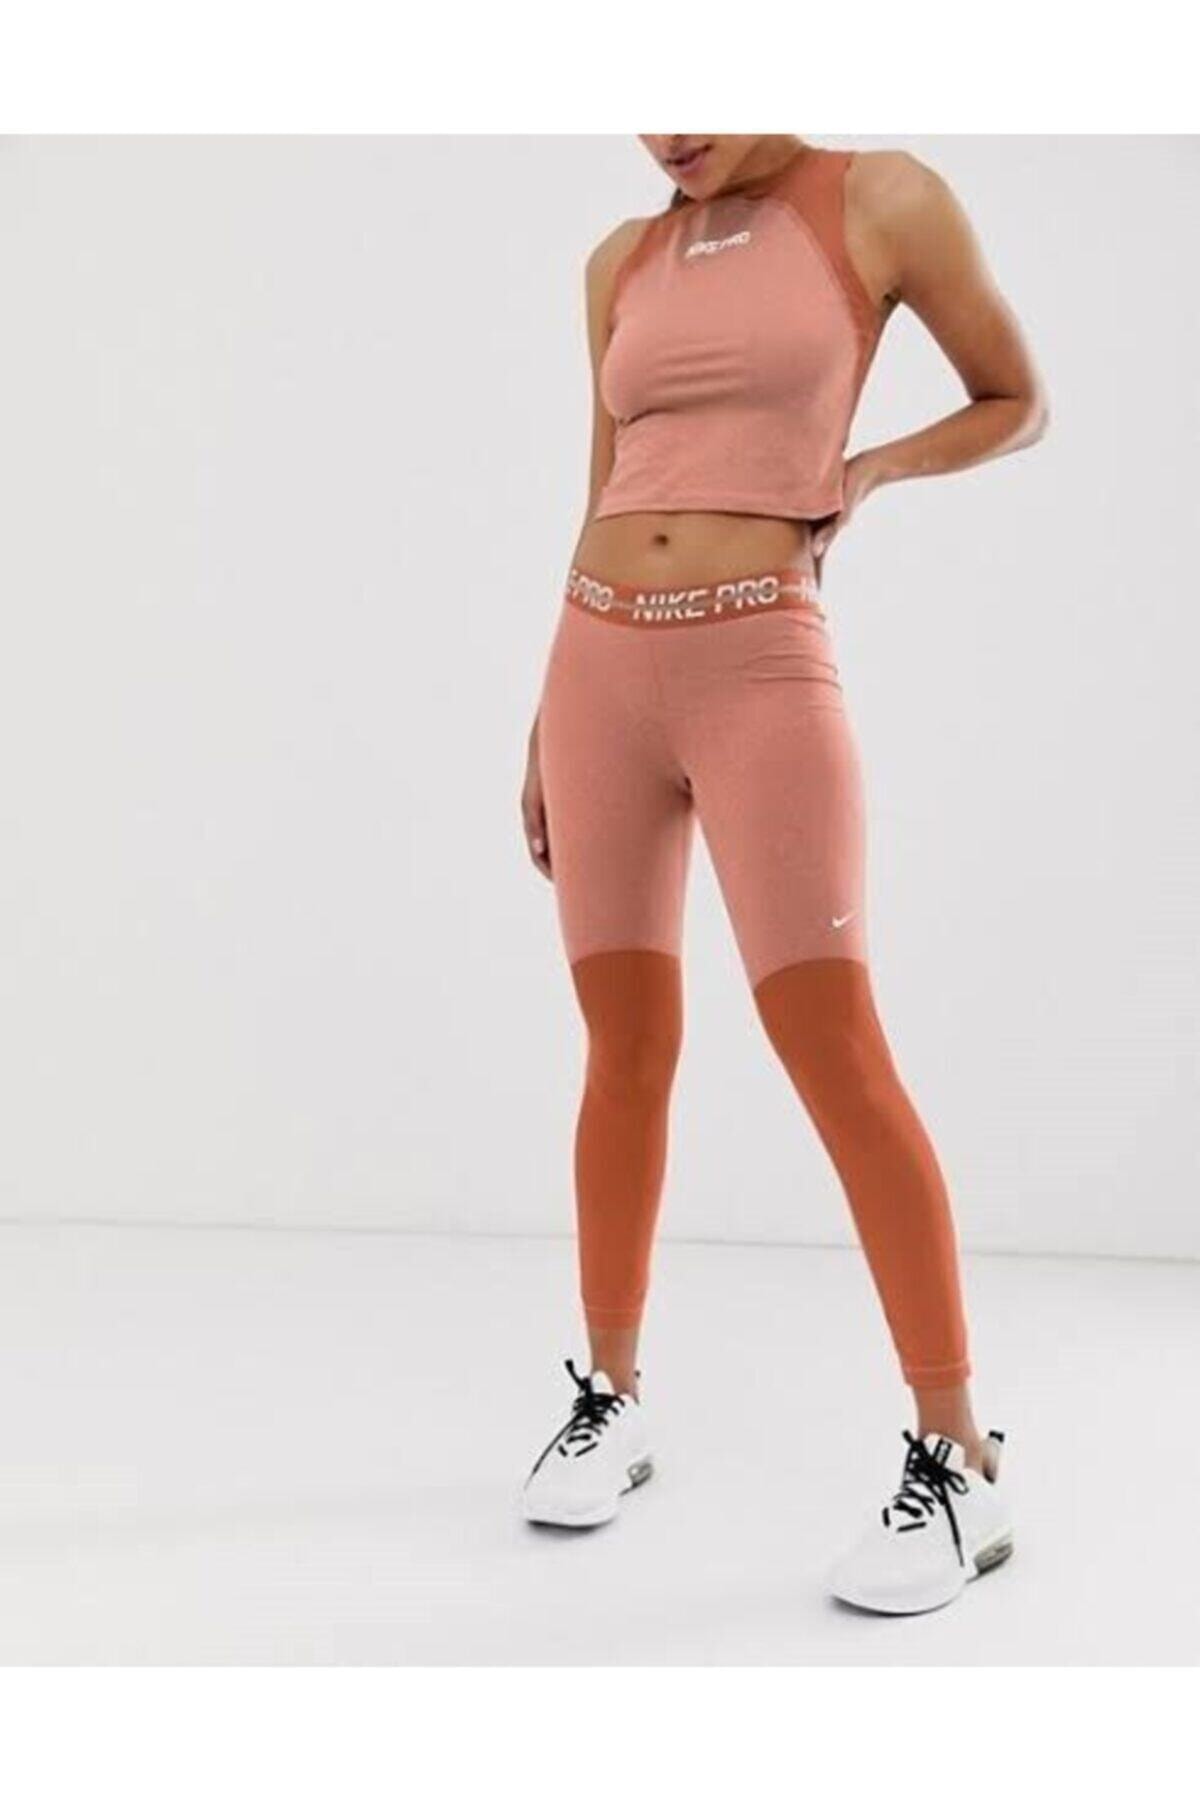 Nike Kadın Tayt - Tarçın Rengi Spor Tayt - Ct4975 252